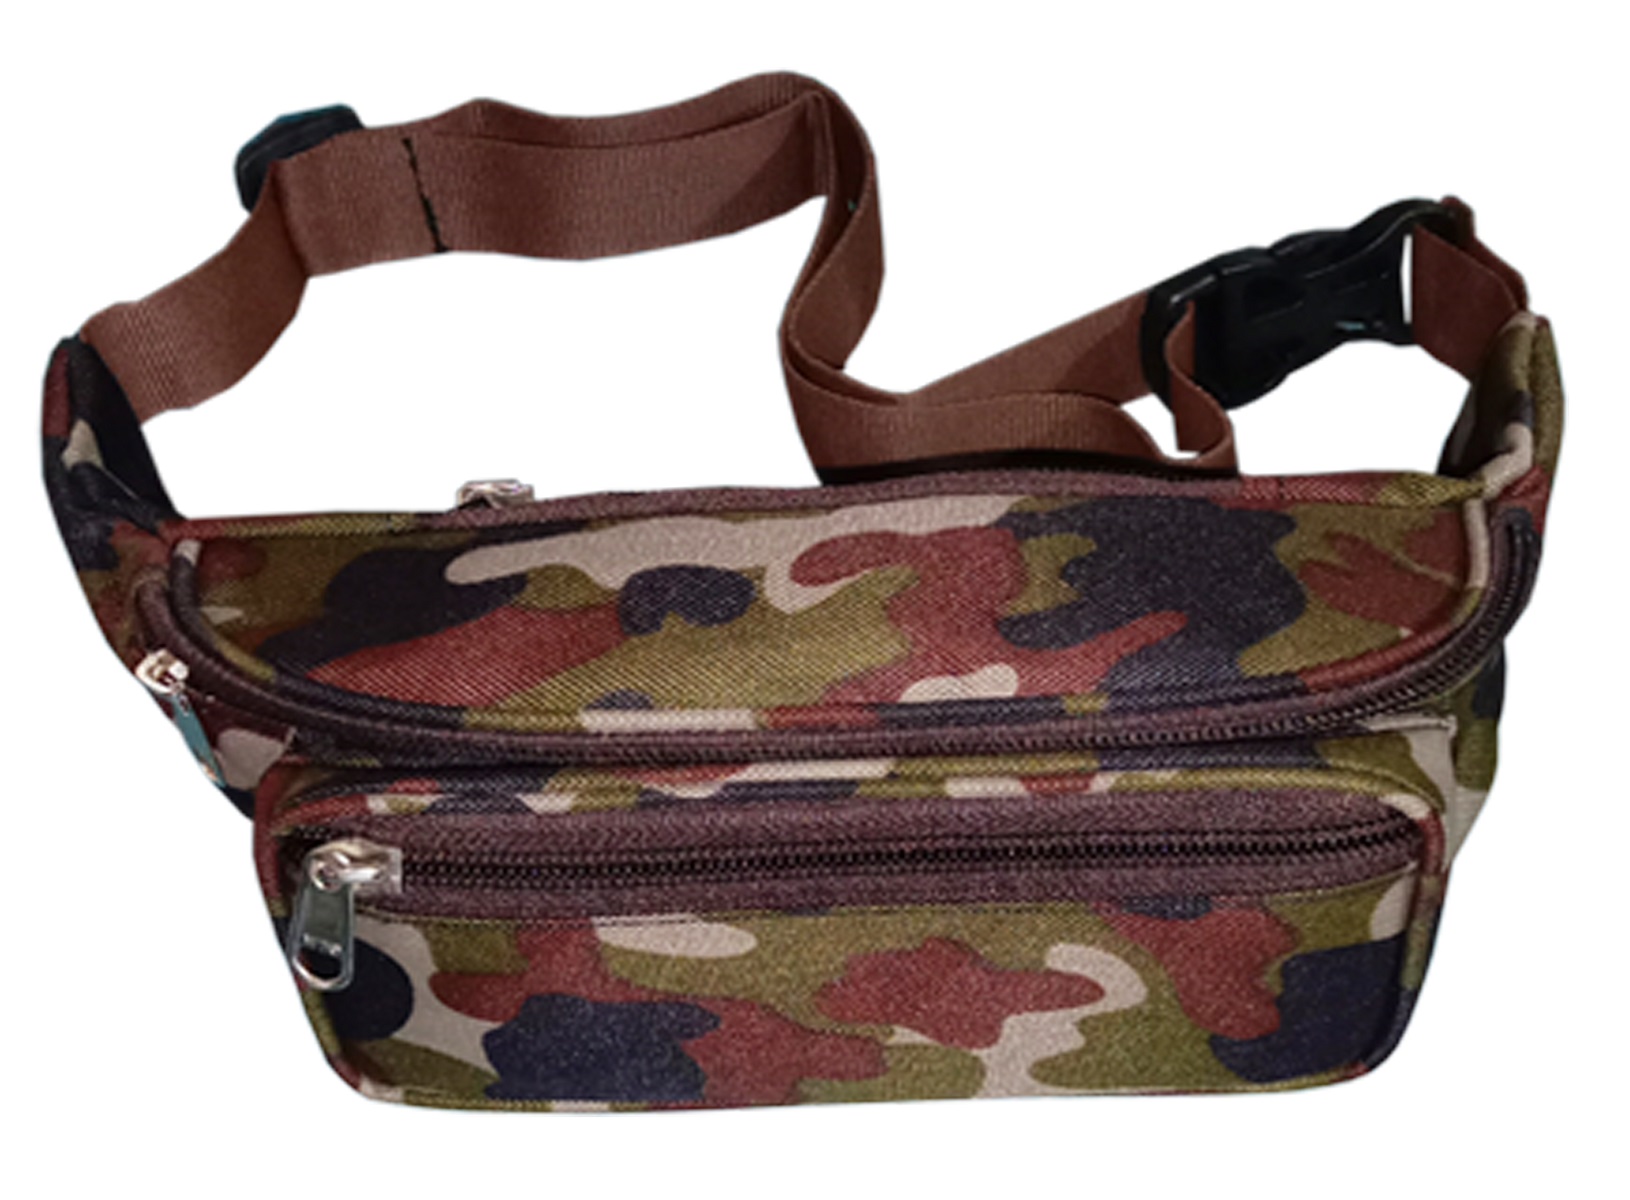 PRODUCTMINE Travel Waist Pouch Travel Bag Waist Pack Travel Handy Hiking Zip Pouch Document Money Phone Belt Sport Bag